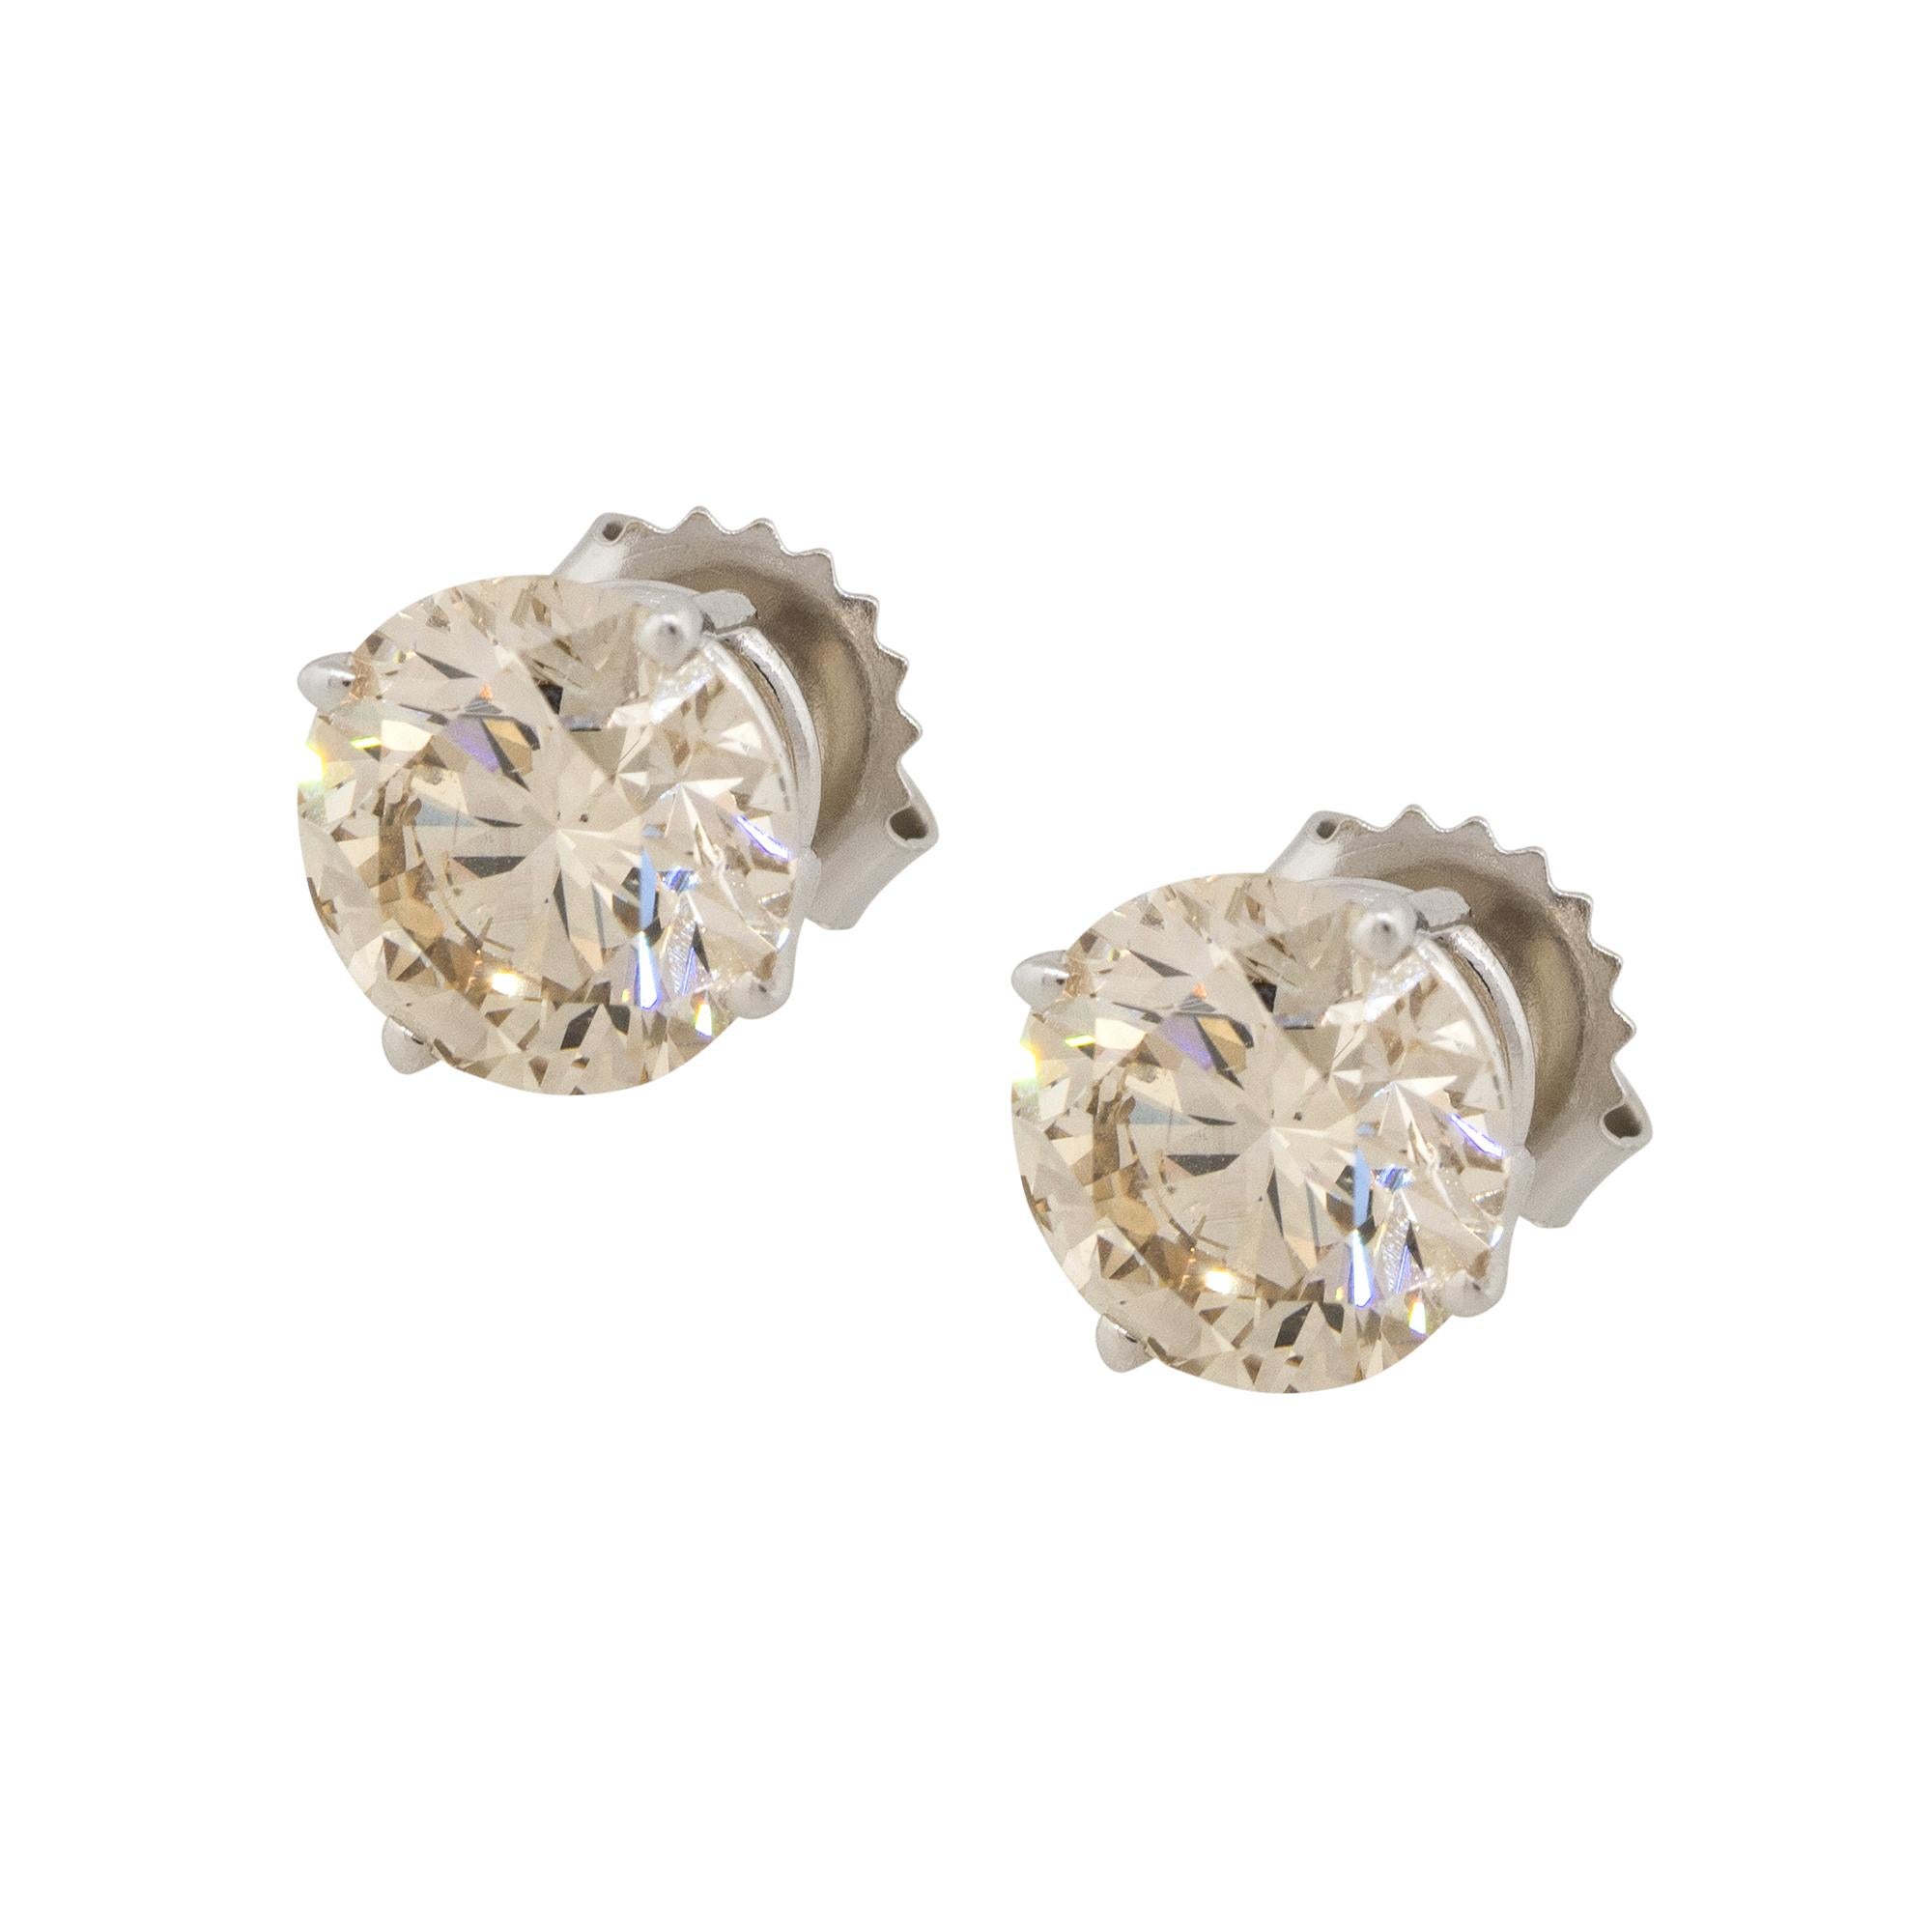 Material: 14k Weißgold
Diamant-Details: Ca. 4,21cts runde Brillanten. Diamanten sind L/M in Farbe und SI1 in Reinheit
Abmessungen: 8.1mm x 14,6mm x 8,1mm
Ohrringe Rückseiten: Spannung Post
Gesamtgewicht: 1,9g (1,2dwt)
Zusätzliche Details: Dieser